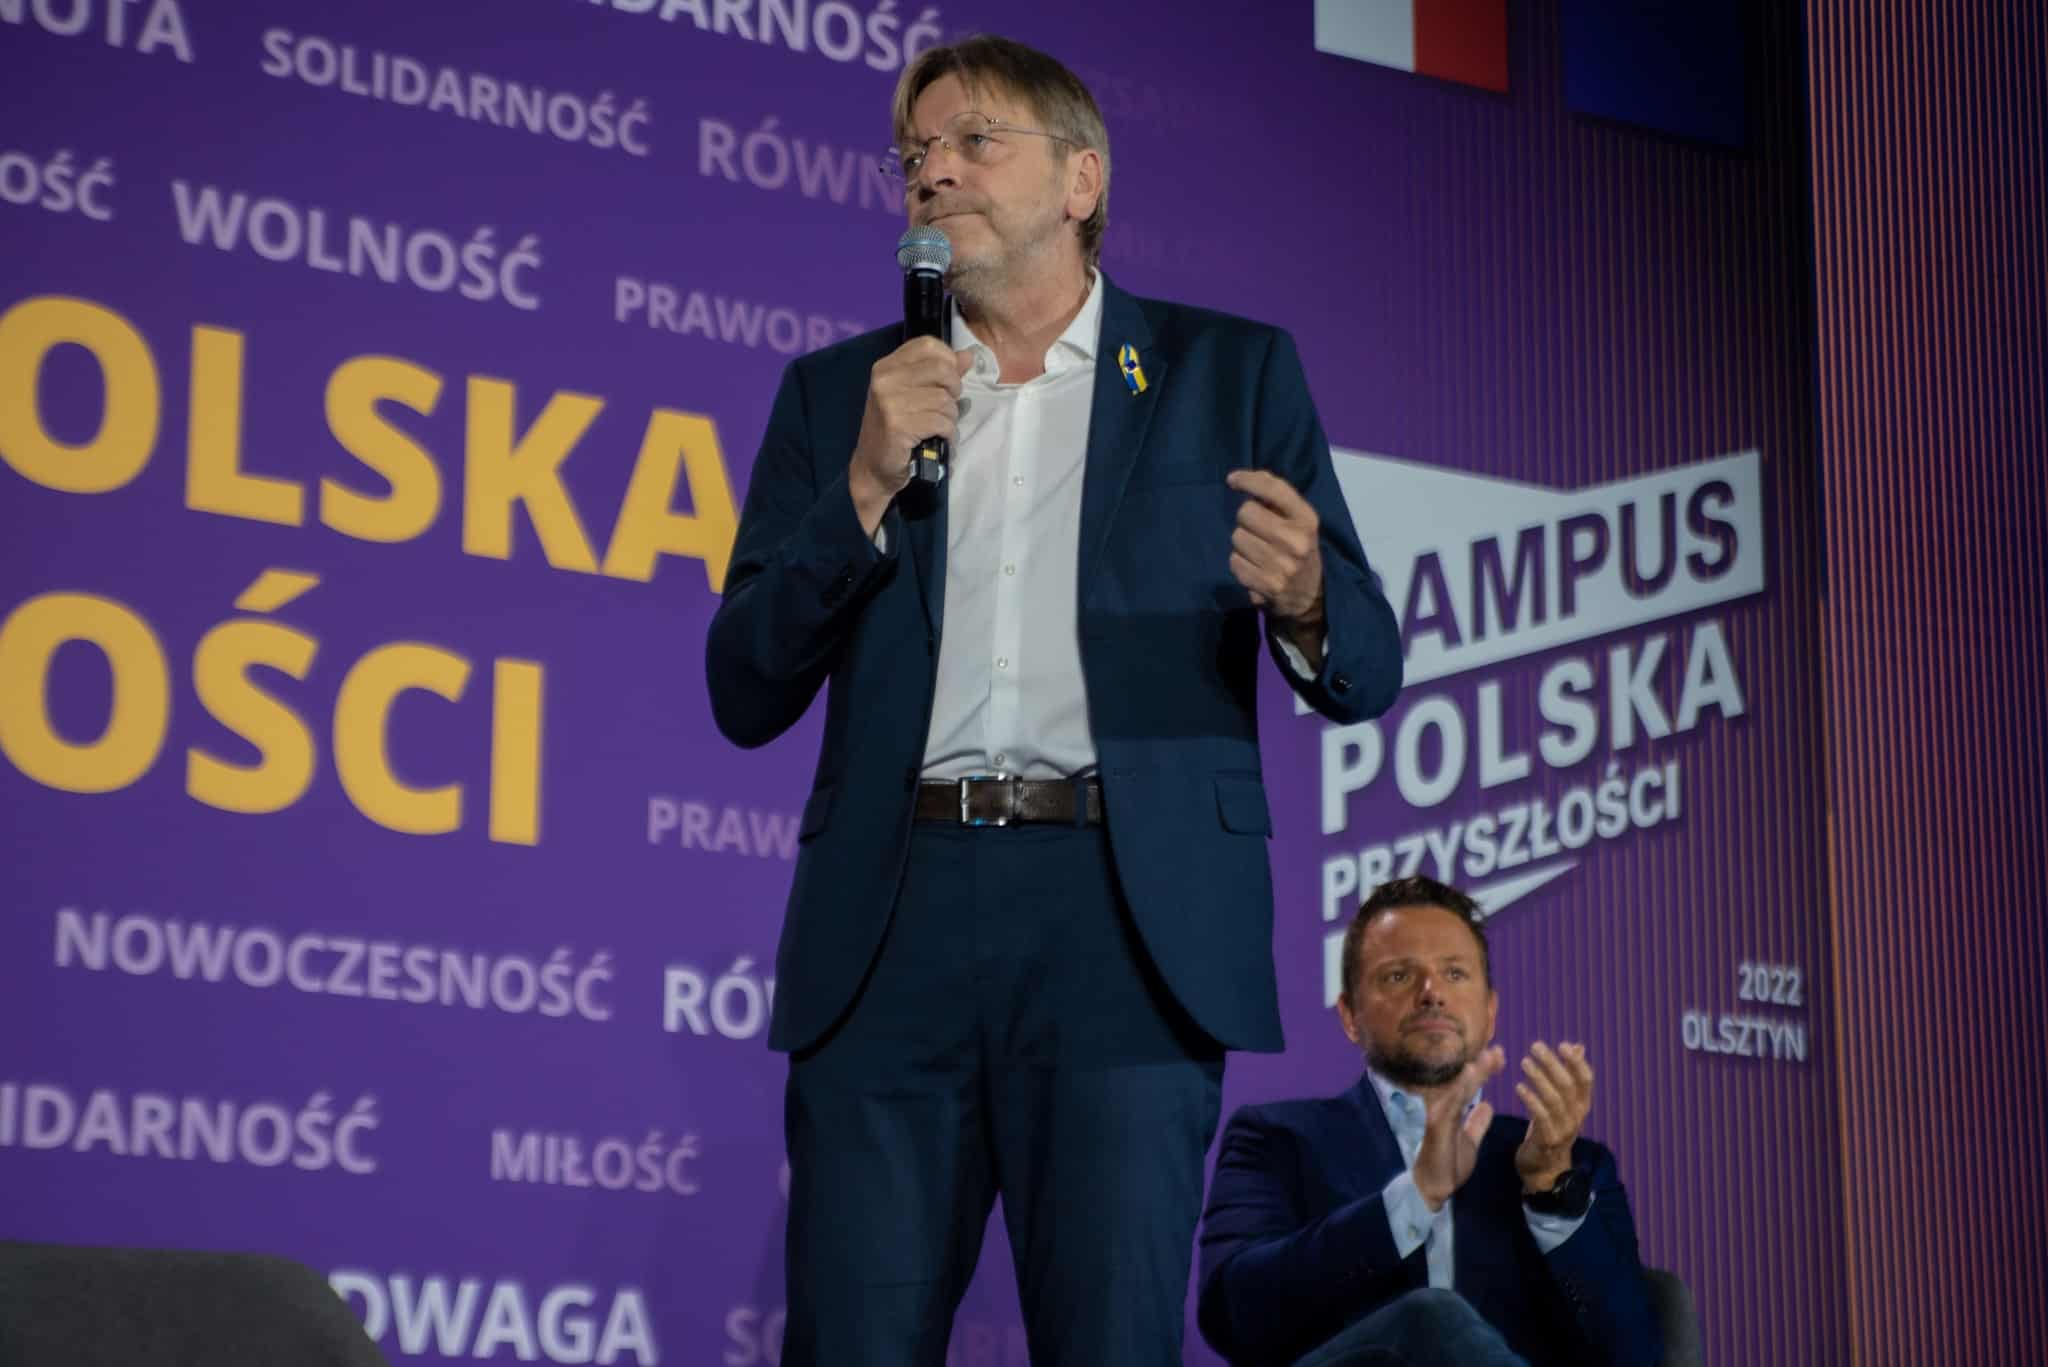 Verhofstadt w Olsztynie: w UE należy odejść od zasady jednomyślności polityka Olsztyn, Wiadomości, zShowcase